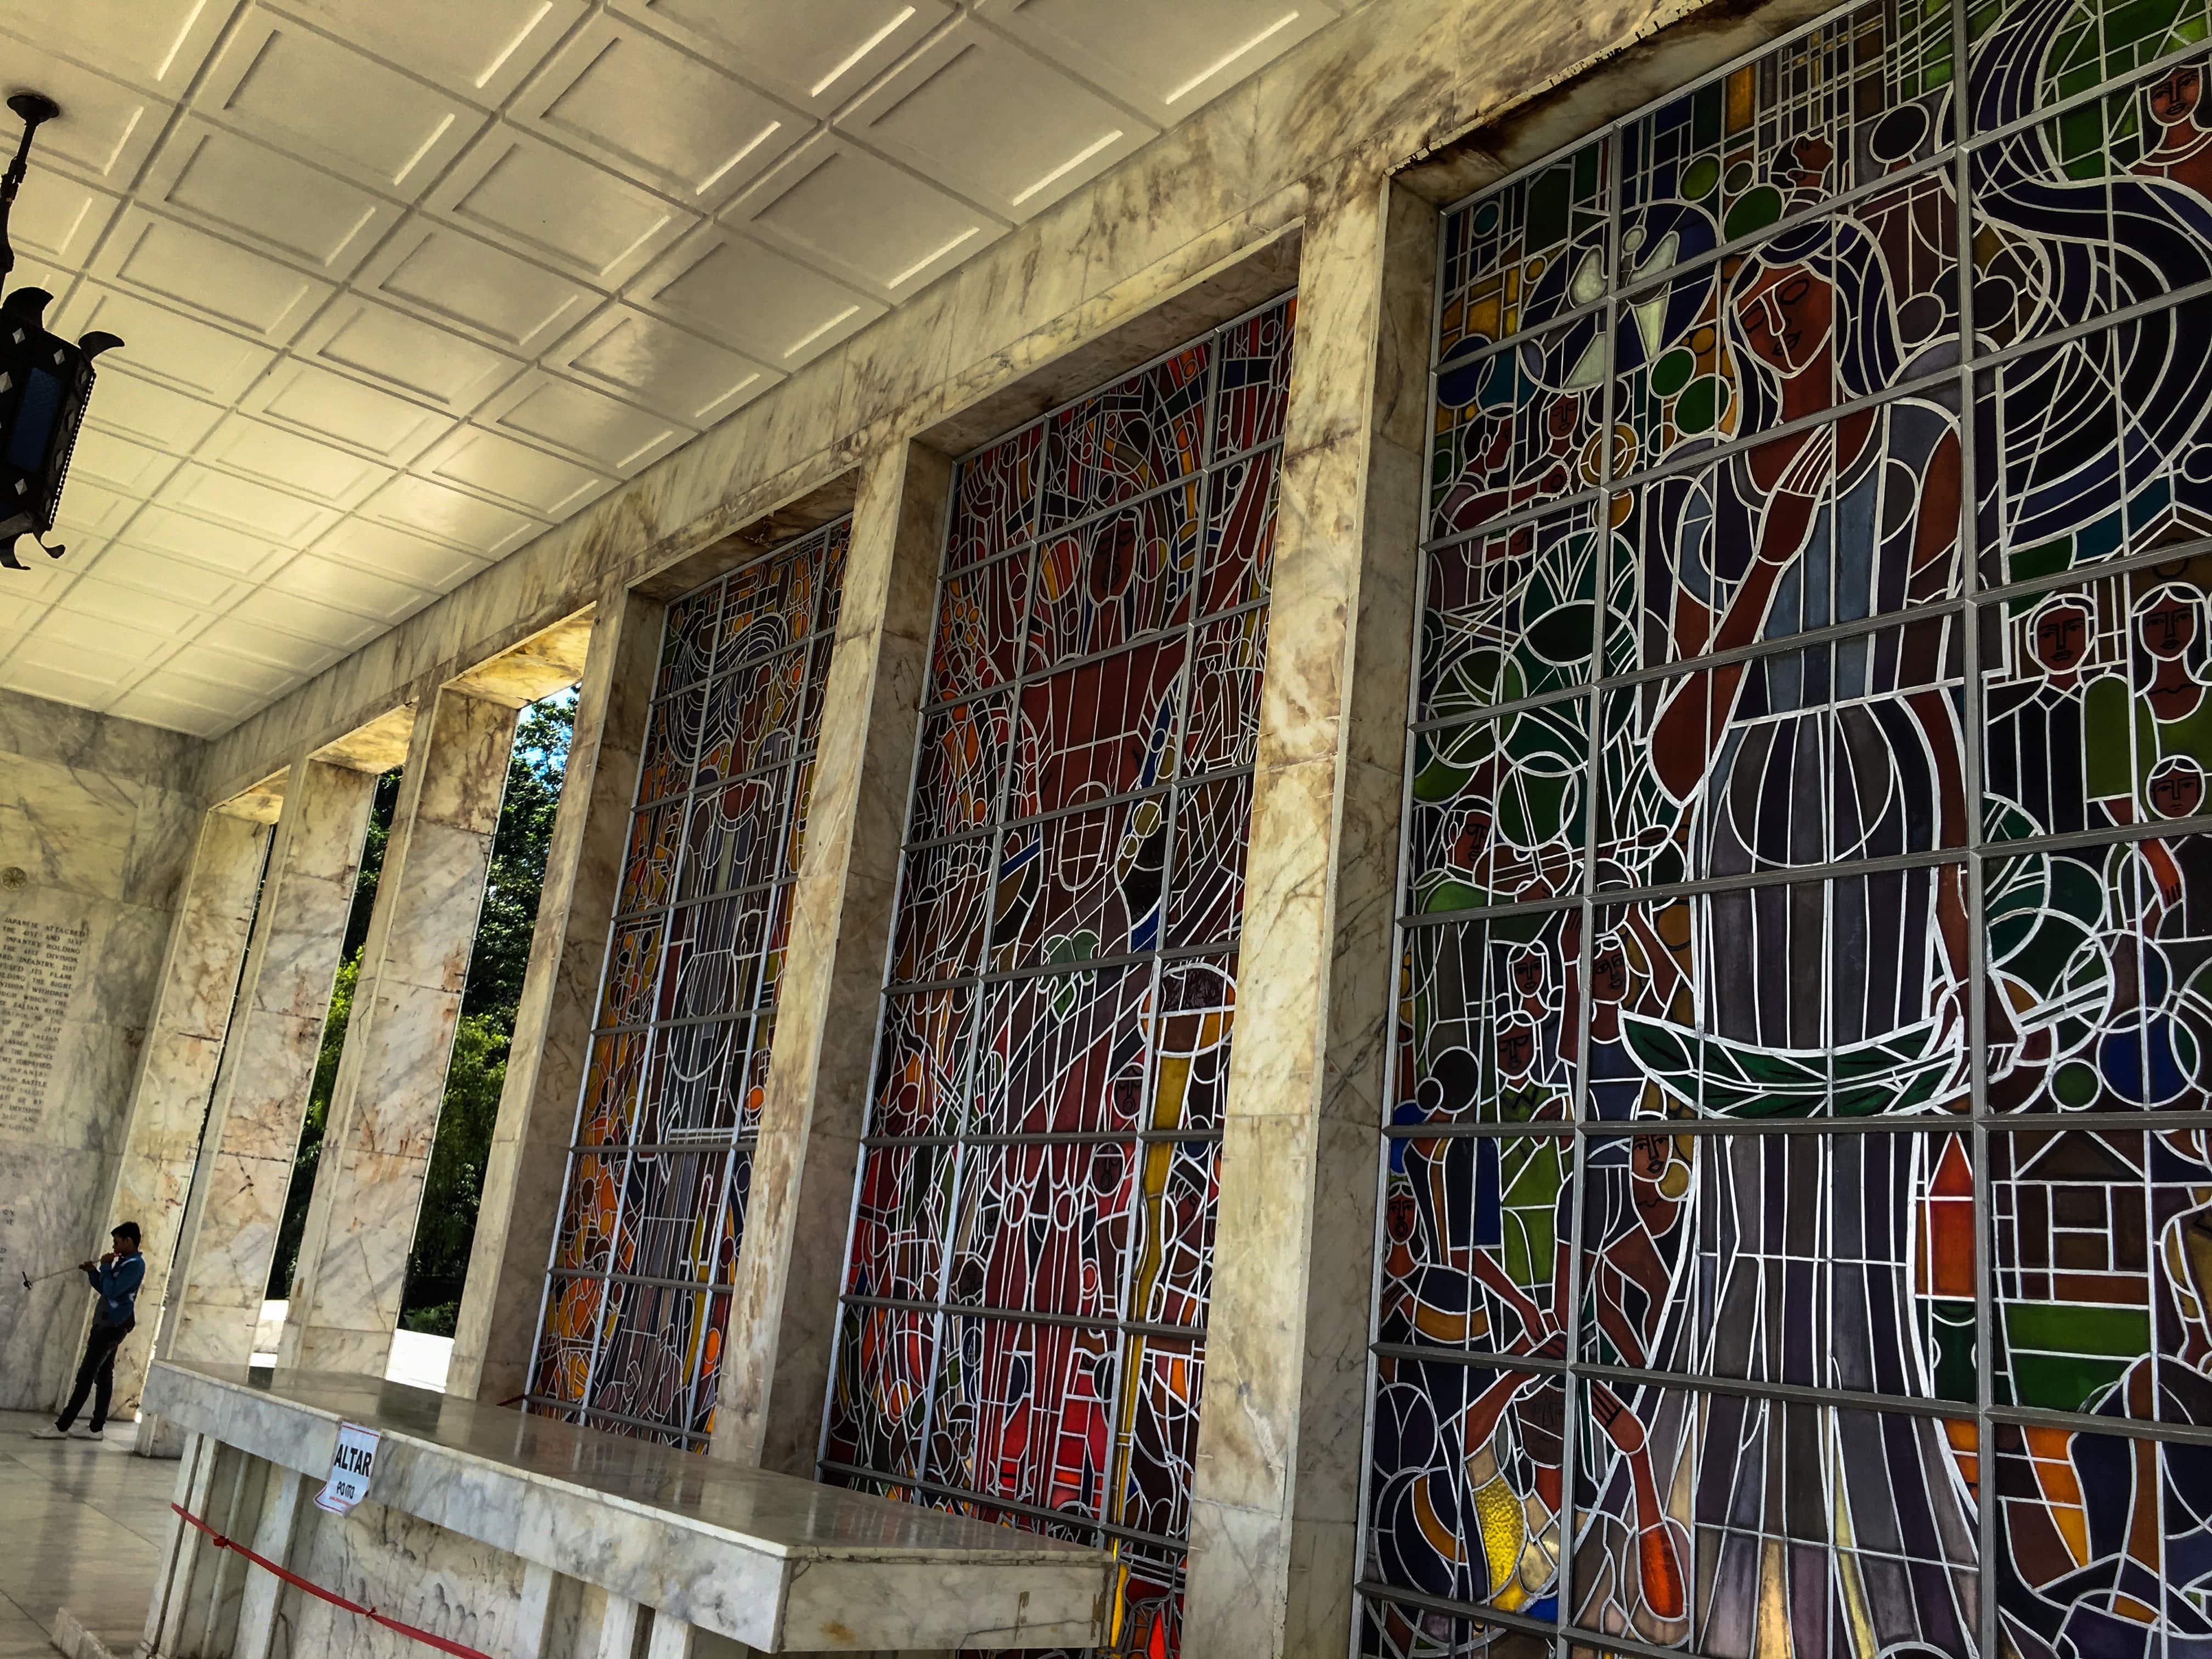 mosaic glass murals and altar in collonade of dambana ng kagitingan at mount samat bataan